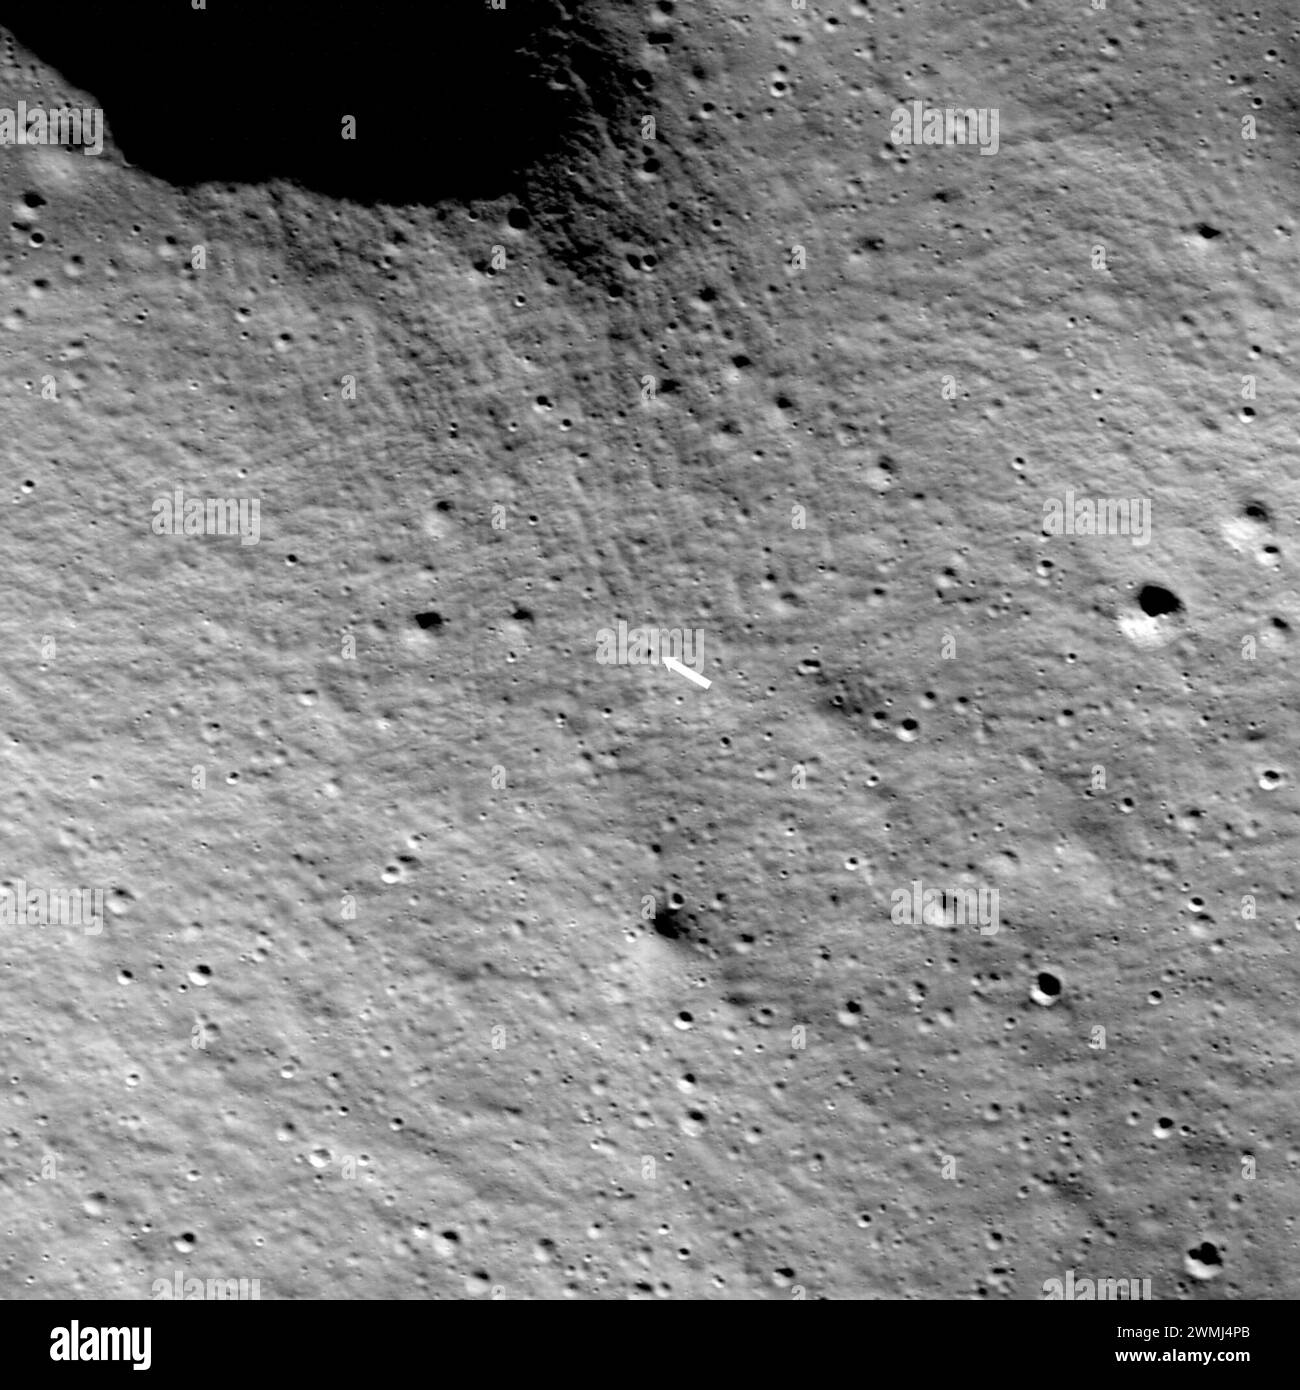 26 février 2024 : la première photo de l'atterrisseur lunaire Odysseus sur la lune, le premier vaisseau spatial américain à effectuer un atterrissage en douceur sur la surface lunaire depuis plus de 50 ans, a été publiée lundi. L'image montre le vaisseau spatial à moins d'un mile (1,6 kilomètres) de son site d'atterrissage prévu au cratère Malapert près du pôle Sud, le plus au sud qu'un véhicule ait pu atteindre sur la lune. Les machines intuitives IM-1 Nova-C, connues sous le nom d'Odysseus, ont atterri sur la Lune jeudi 22 février à 23:23:53 UTC (17:23 CST). La flèche indique l'atterrisseur Nova-C ; la largeur de l'image est de 973 mètres. Banque D'Images